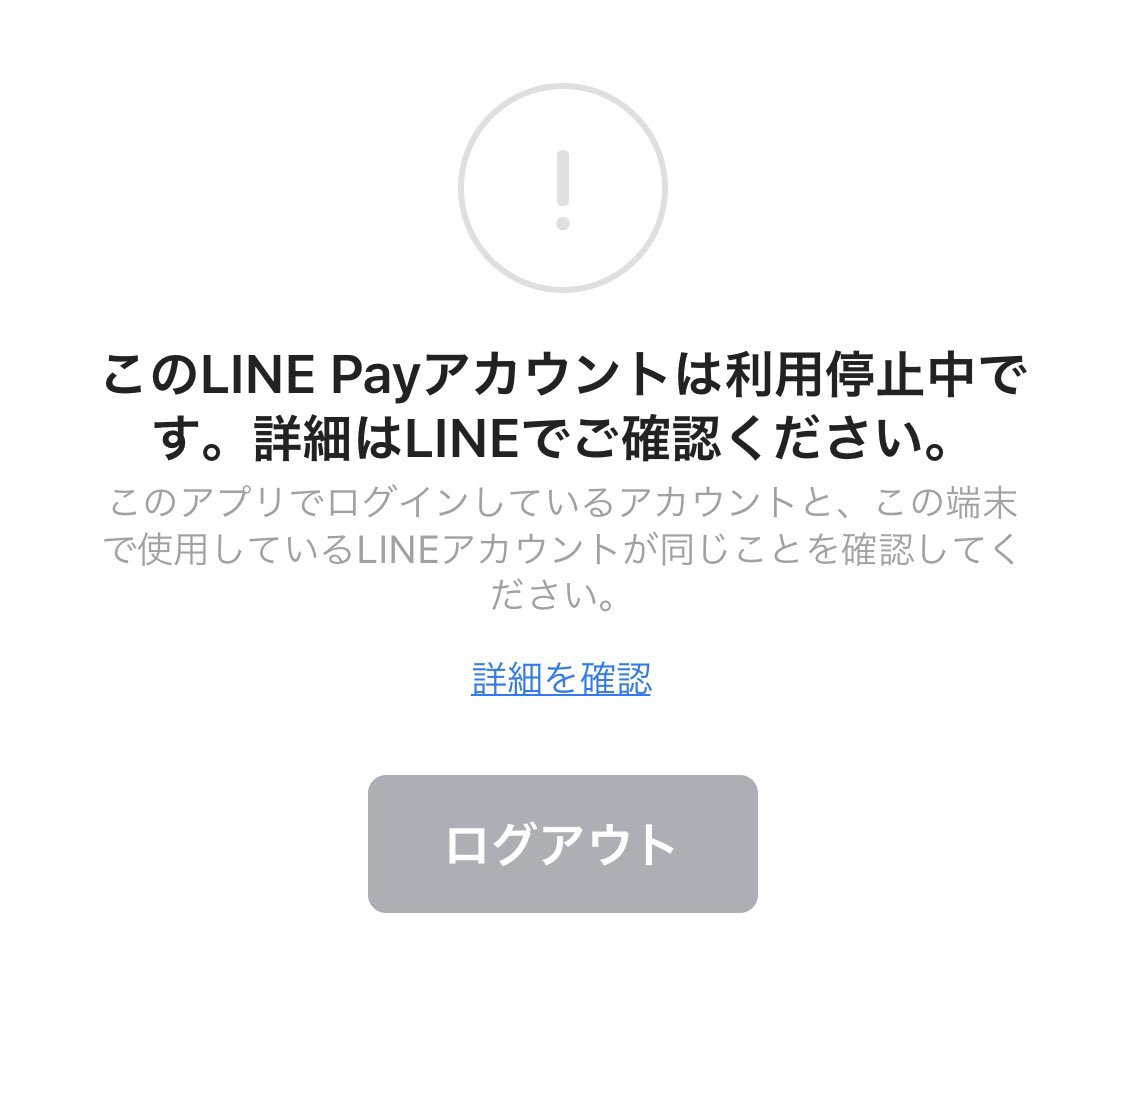 あなこんだ 注意 タイでrabbit Line Payを使用して 同じアカウントのまま日本の携帯番号で Lineの再インストールを行うとline Payがロックされて使えなくなります 再インストール前に事前にrabbit Line Payを解約する必要があるようです 皆様も